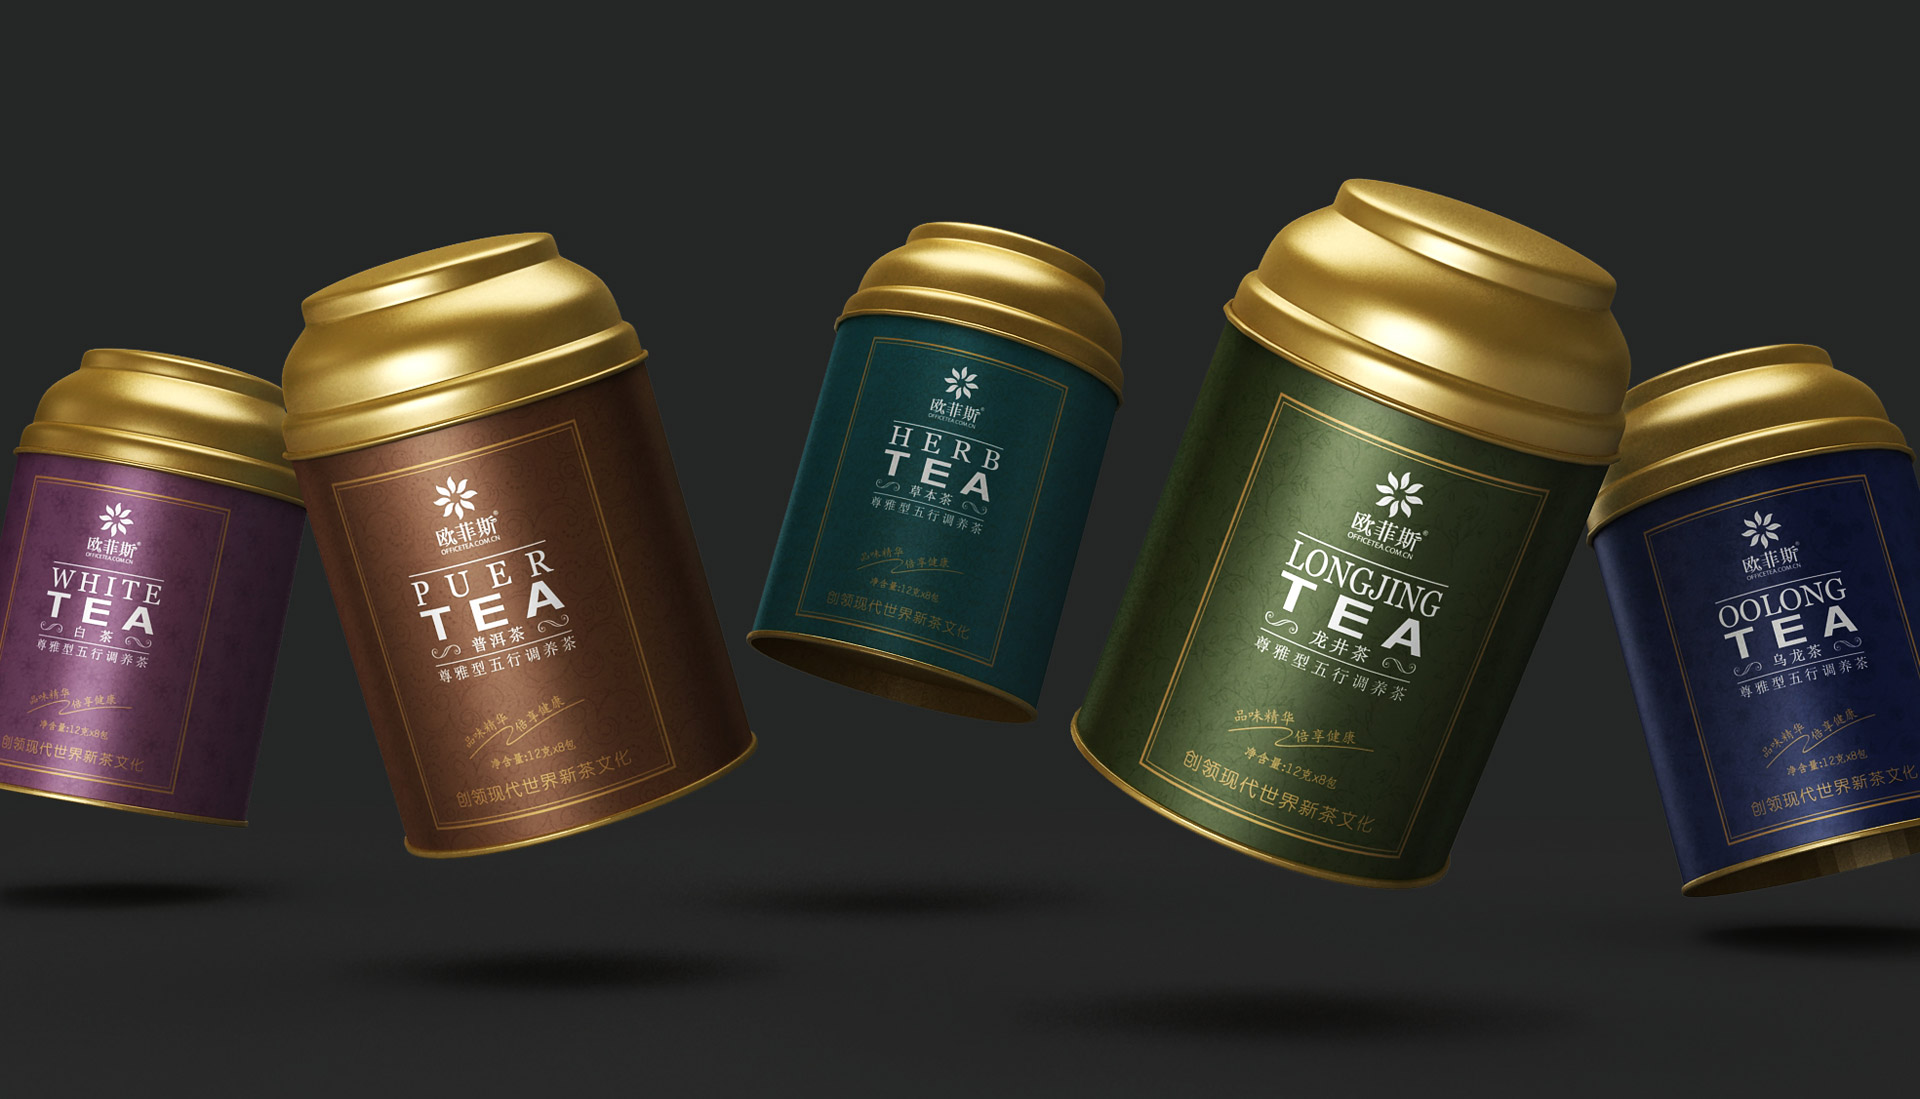 小罐茶包装设计，茶叶包装设计公司，乌龙茶包装设计，龙井茶包装设计，铁观音包装设计，普洱茶包装设计，绿茶包装设计，红茶包装设计，上海包装设计公司